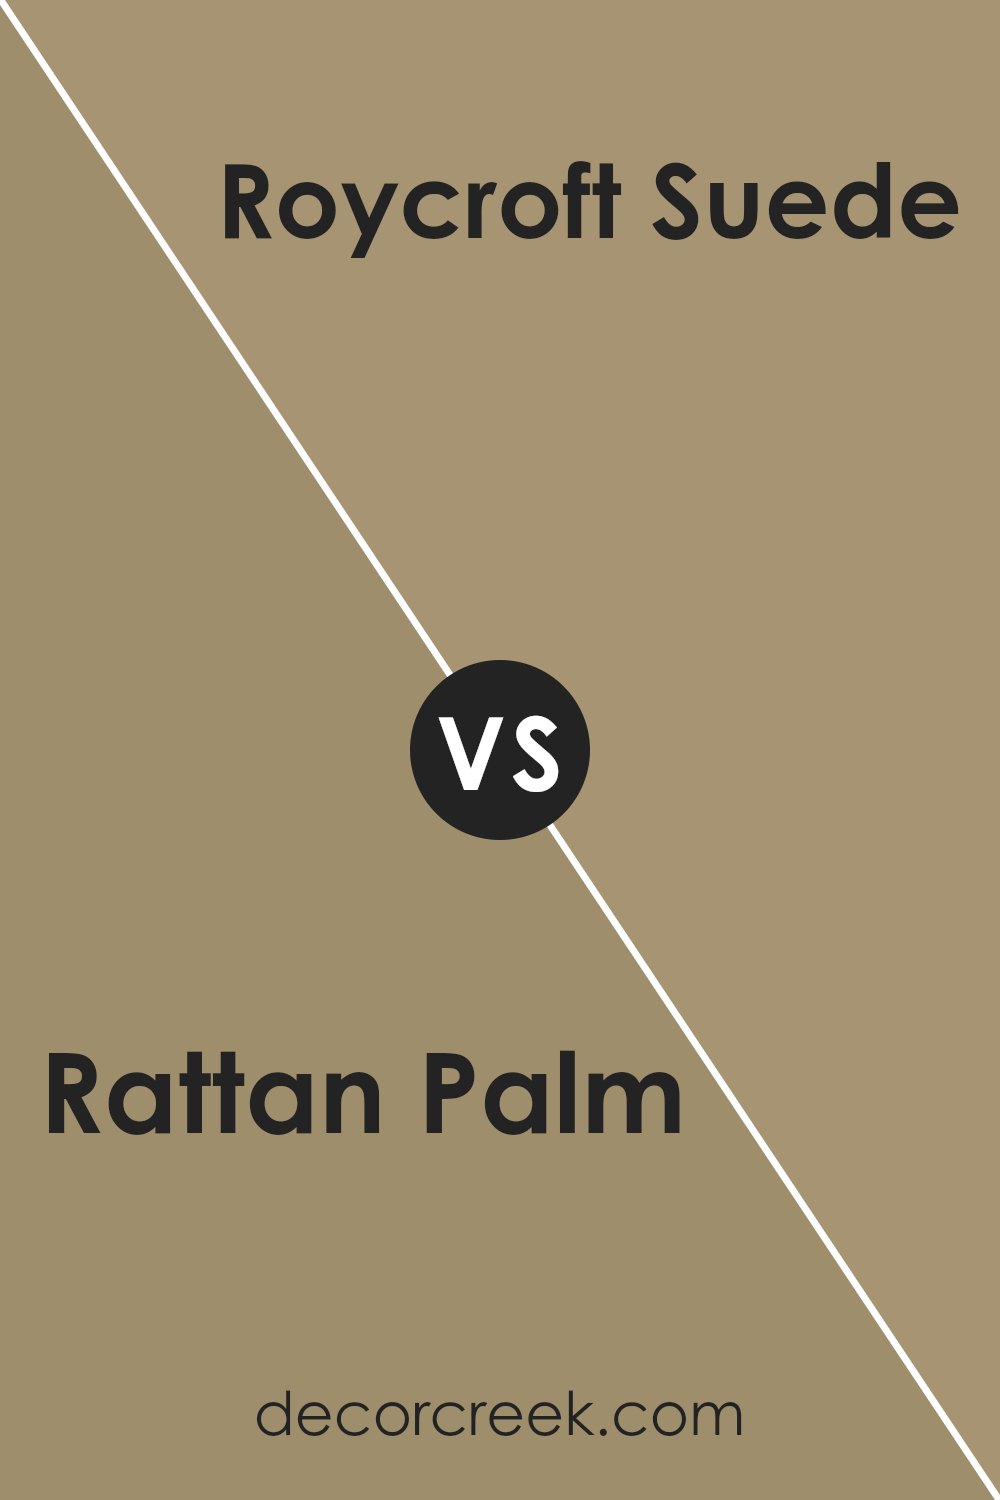 rattan_palm_sw_9533_vs_roycroft_suede_sw_2842